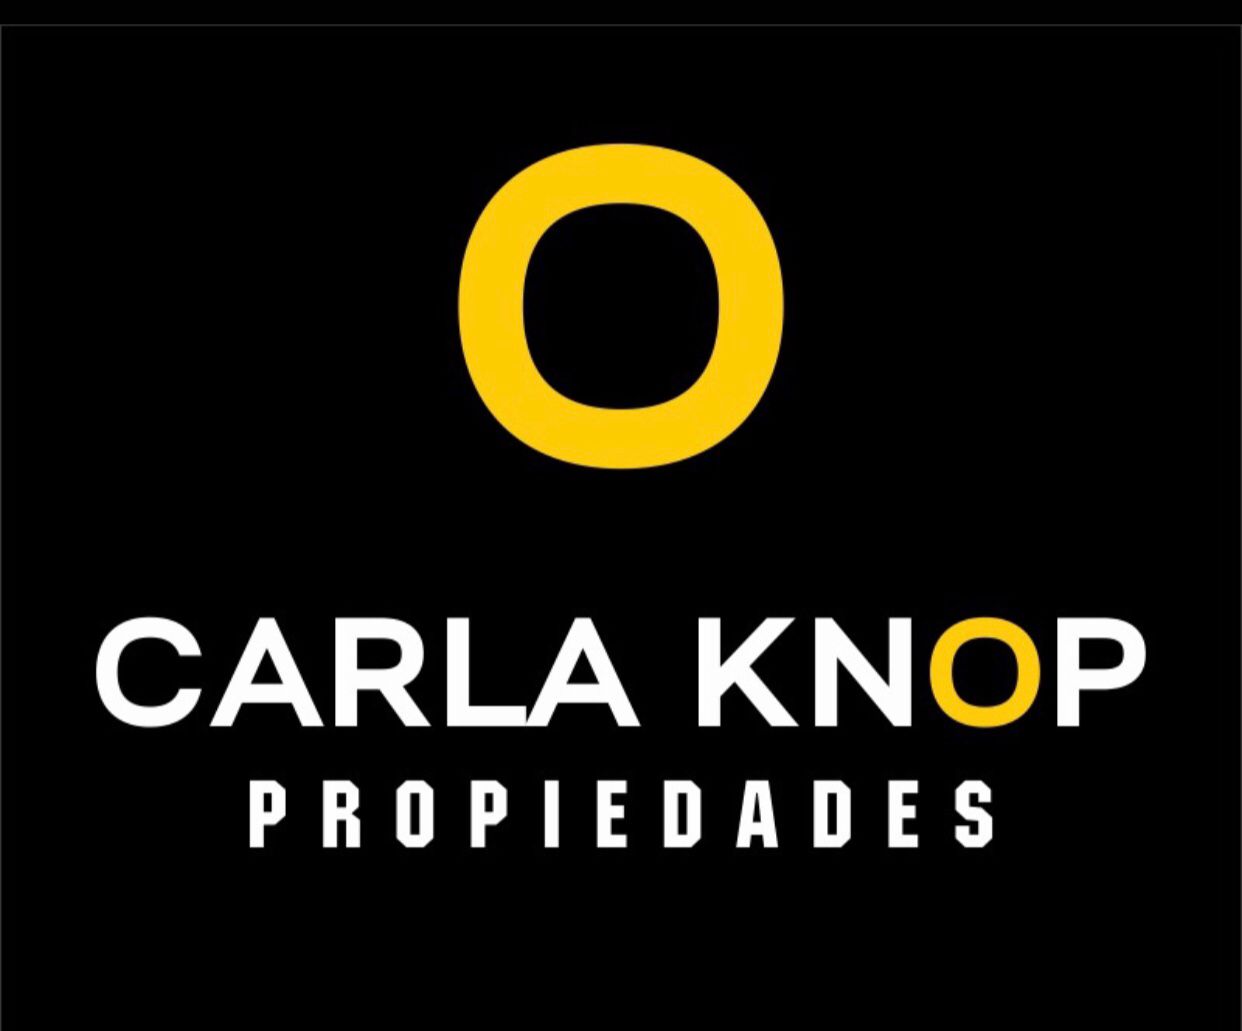 CARLA KNOP PROPIEDADES